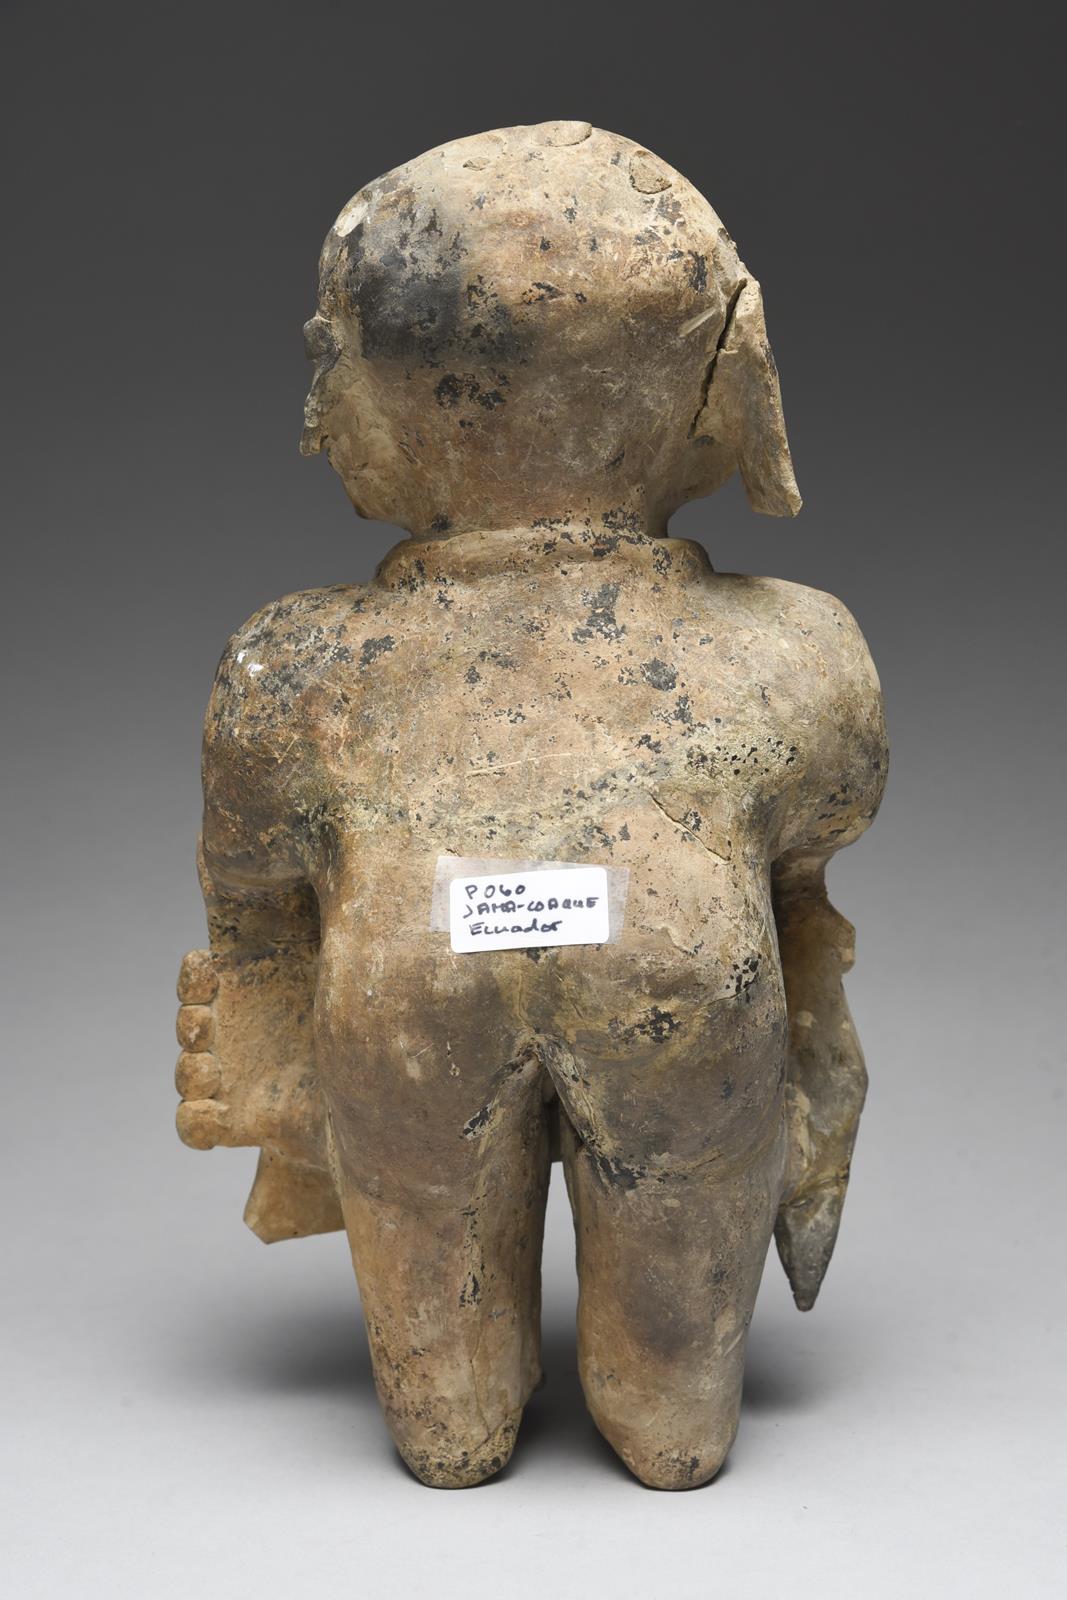 A Jama Coaque standing warrior Ecuador, circa 500 BC - 600 AD pottery, wearing a headdress, necklace - Image 3 of 4